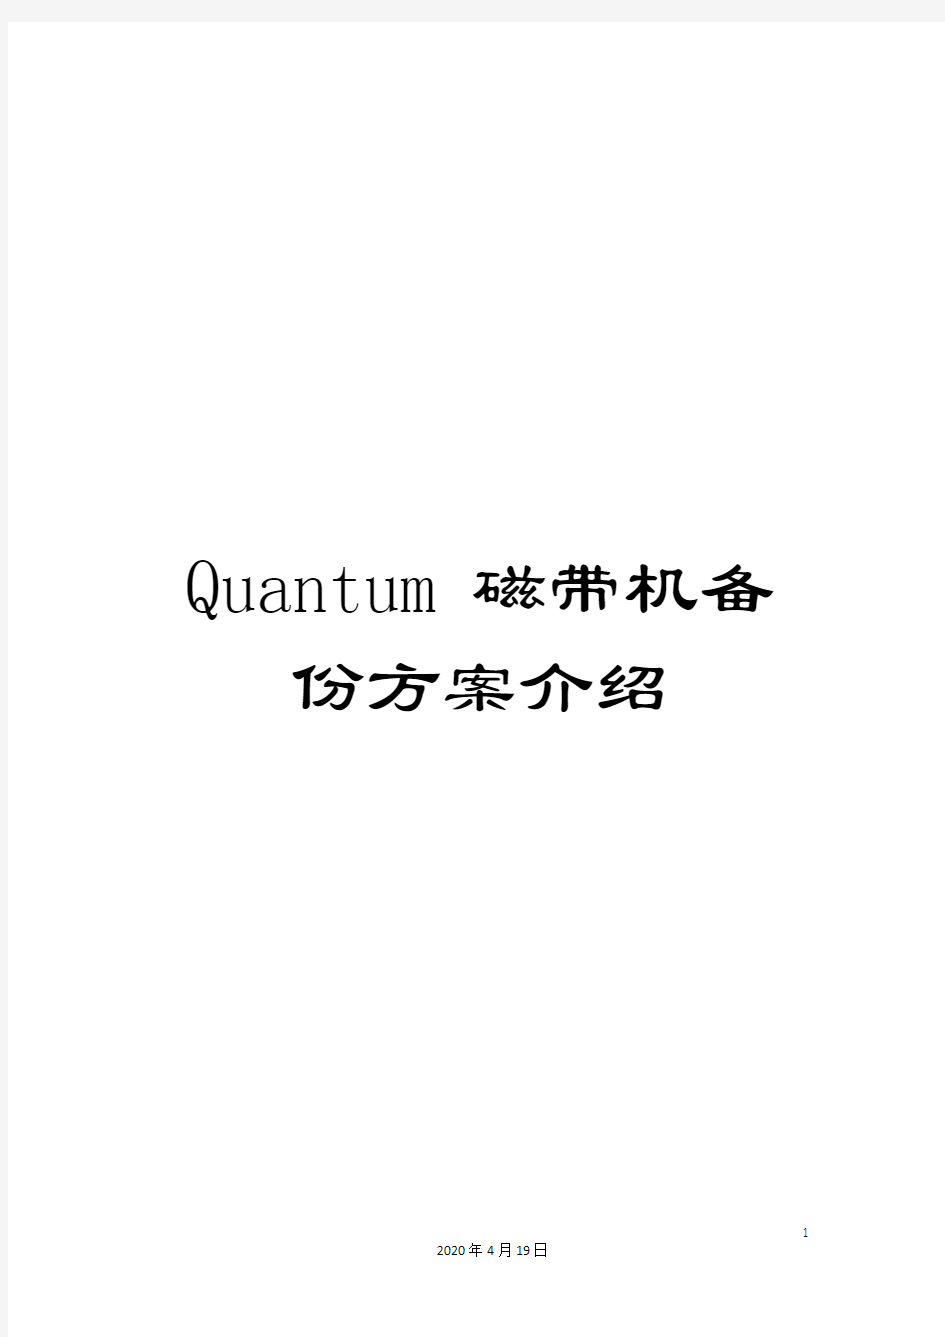 Quantum磁带机备份方案介绍